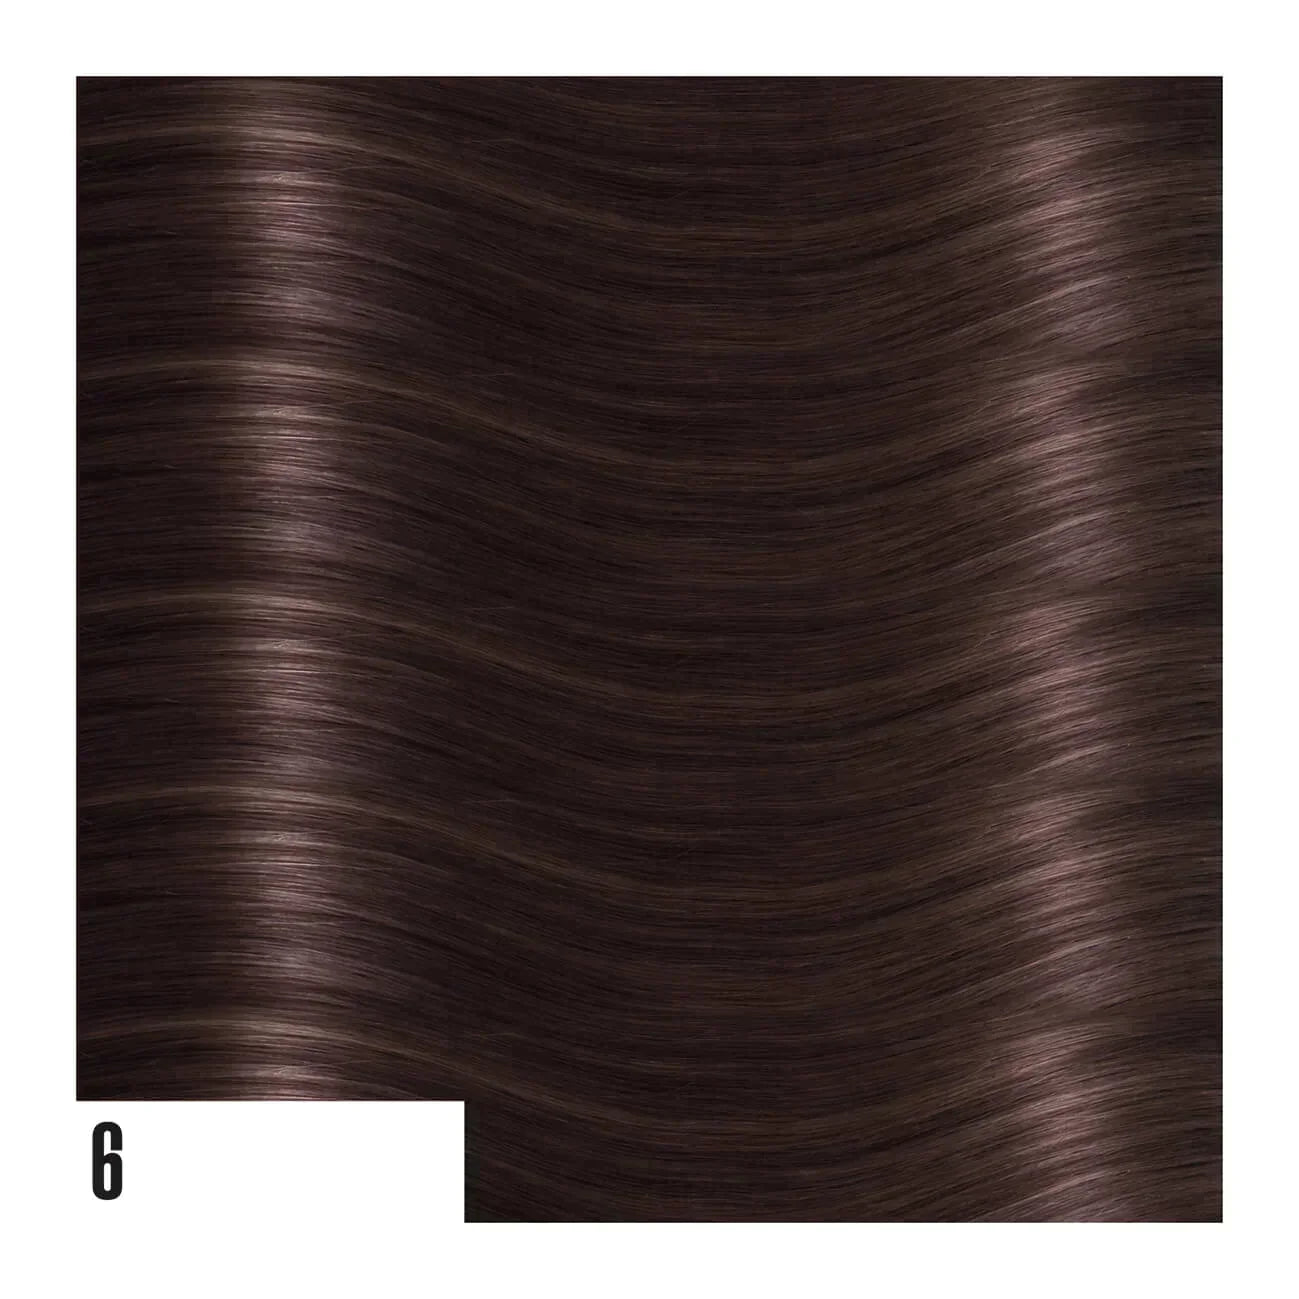 Weft Hair Extension di Capelli Lisci (50cm/55cm)